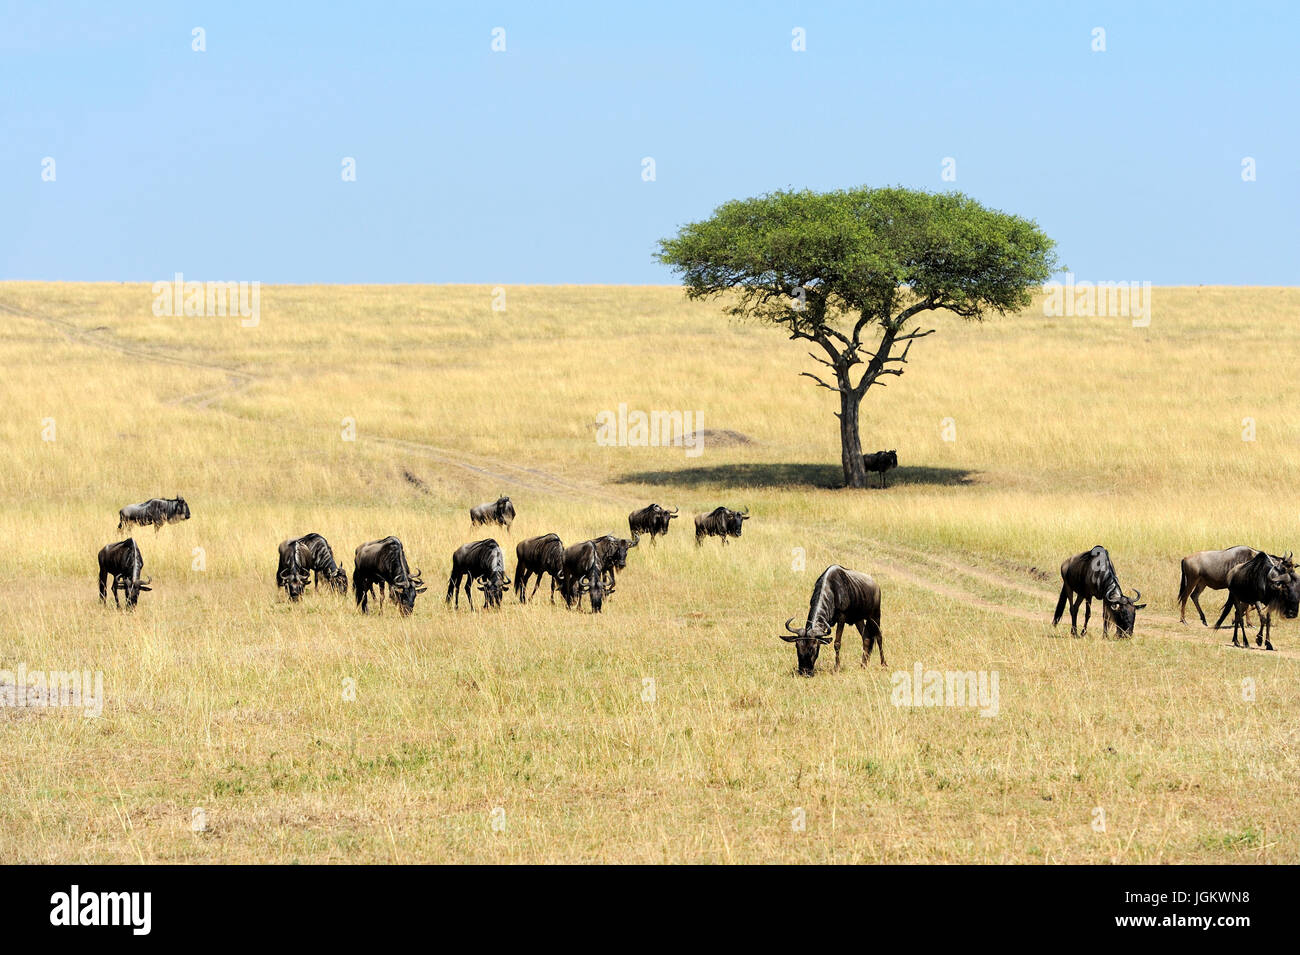 Les gnous dans la savane, le parc national du Kenya, Afrique Banque D'Images